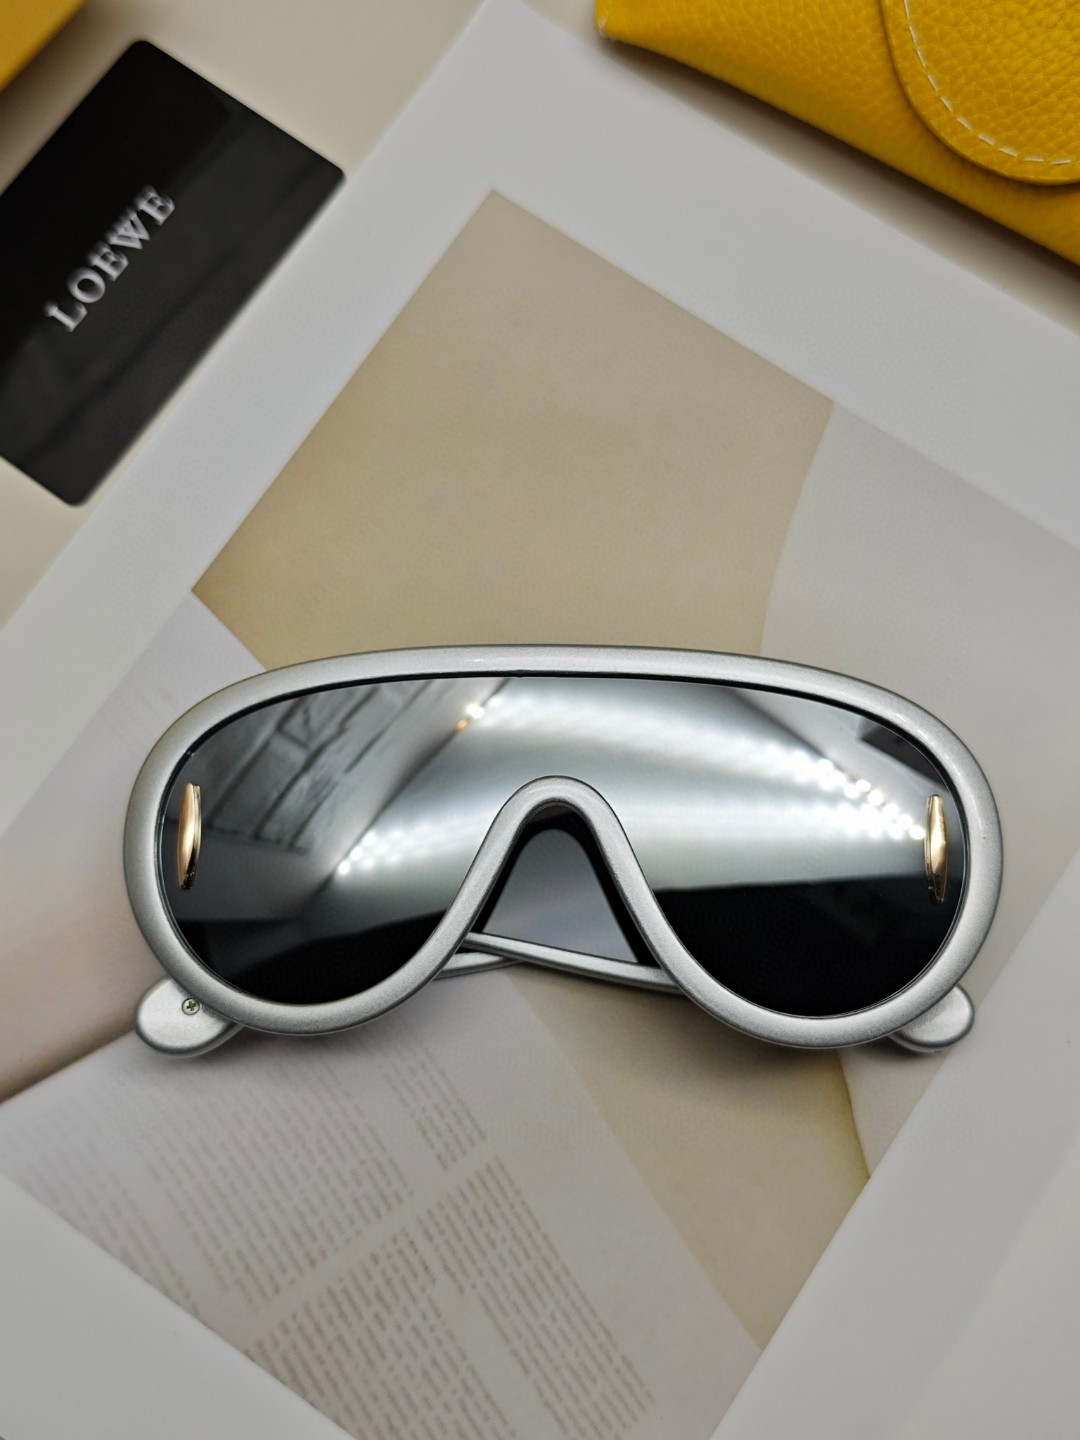 Loewe罗意威新款太阳镜多巴胺配色24新款罗伊家面包充气飞行员太阳镜小红书网红同款墨镜